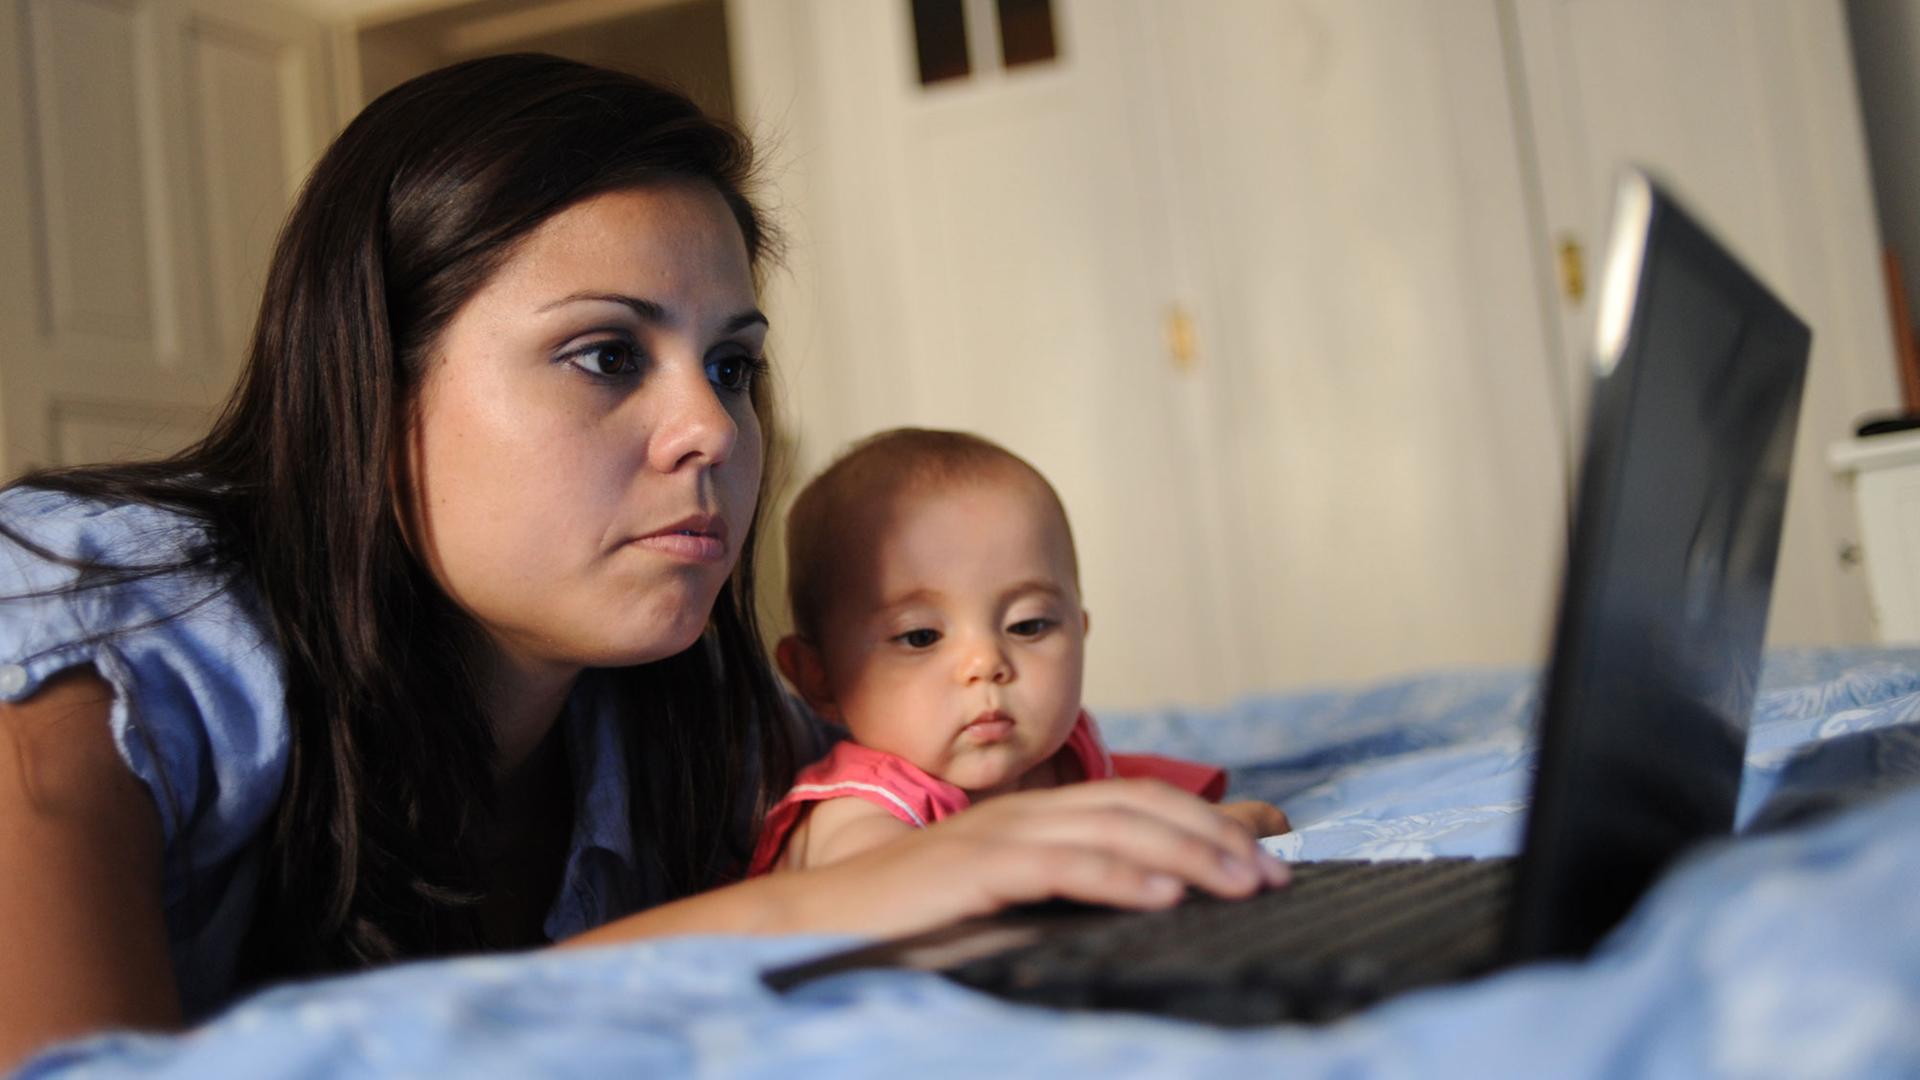 Eine Frau liegt am 10.6.2010 in ihrer Wohnung auf dem Bett und schaut auf einen Computerbildschirm, während ihre acht Monate alte Tochter daneben liegt und zuschaut.